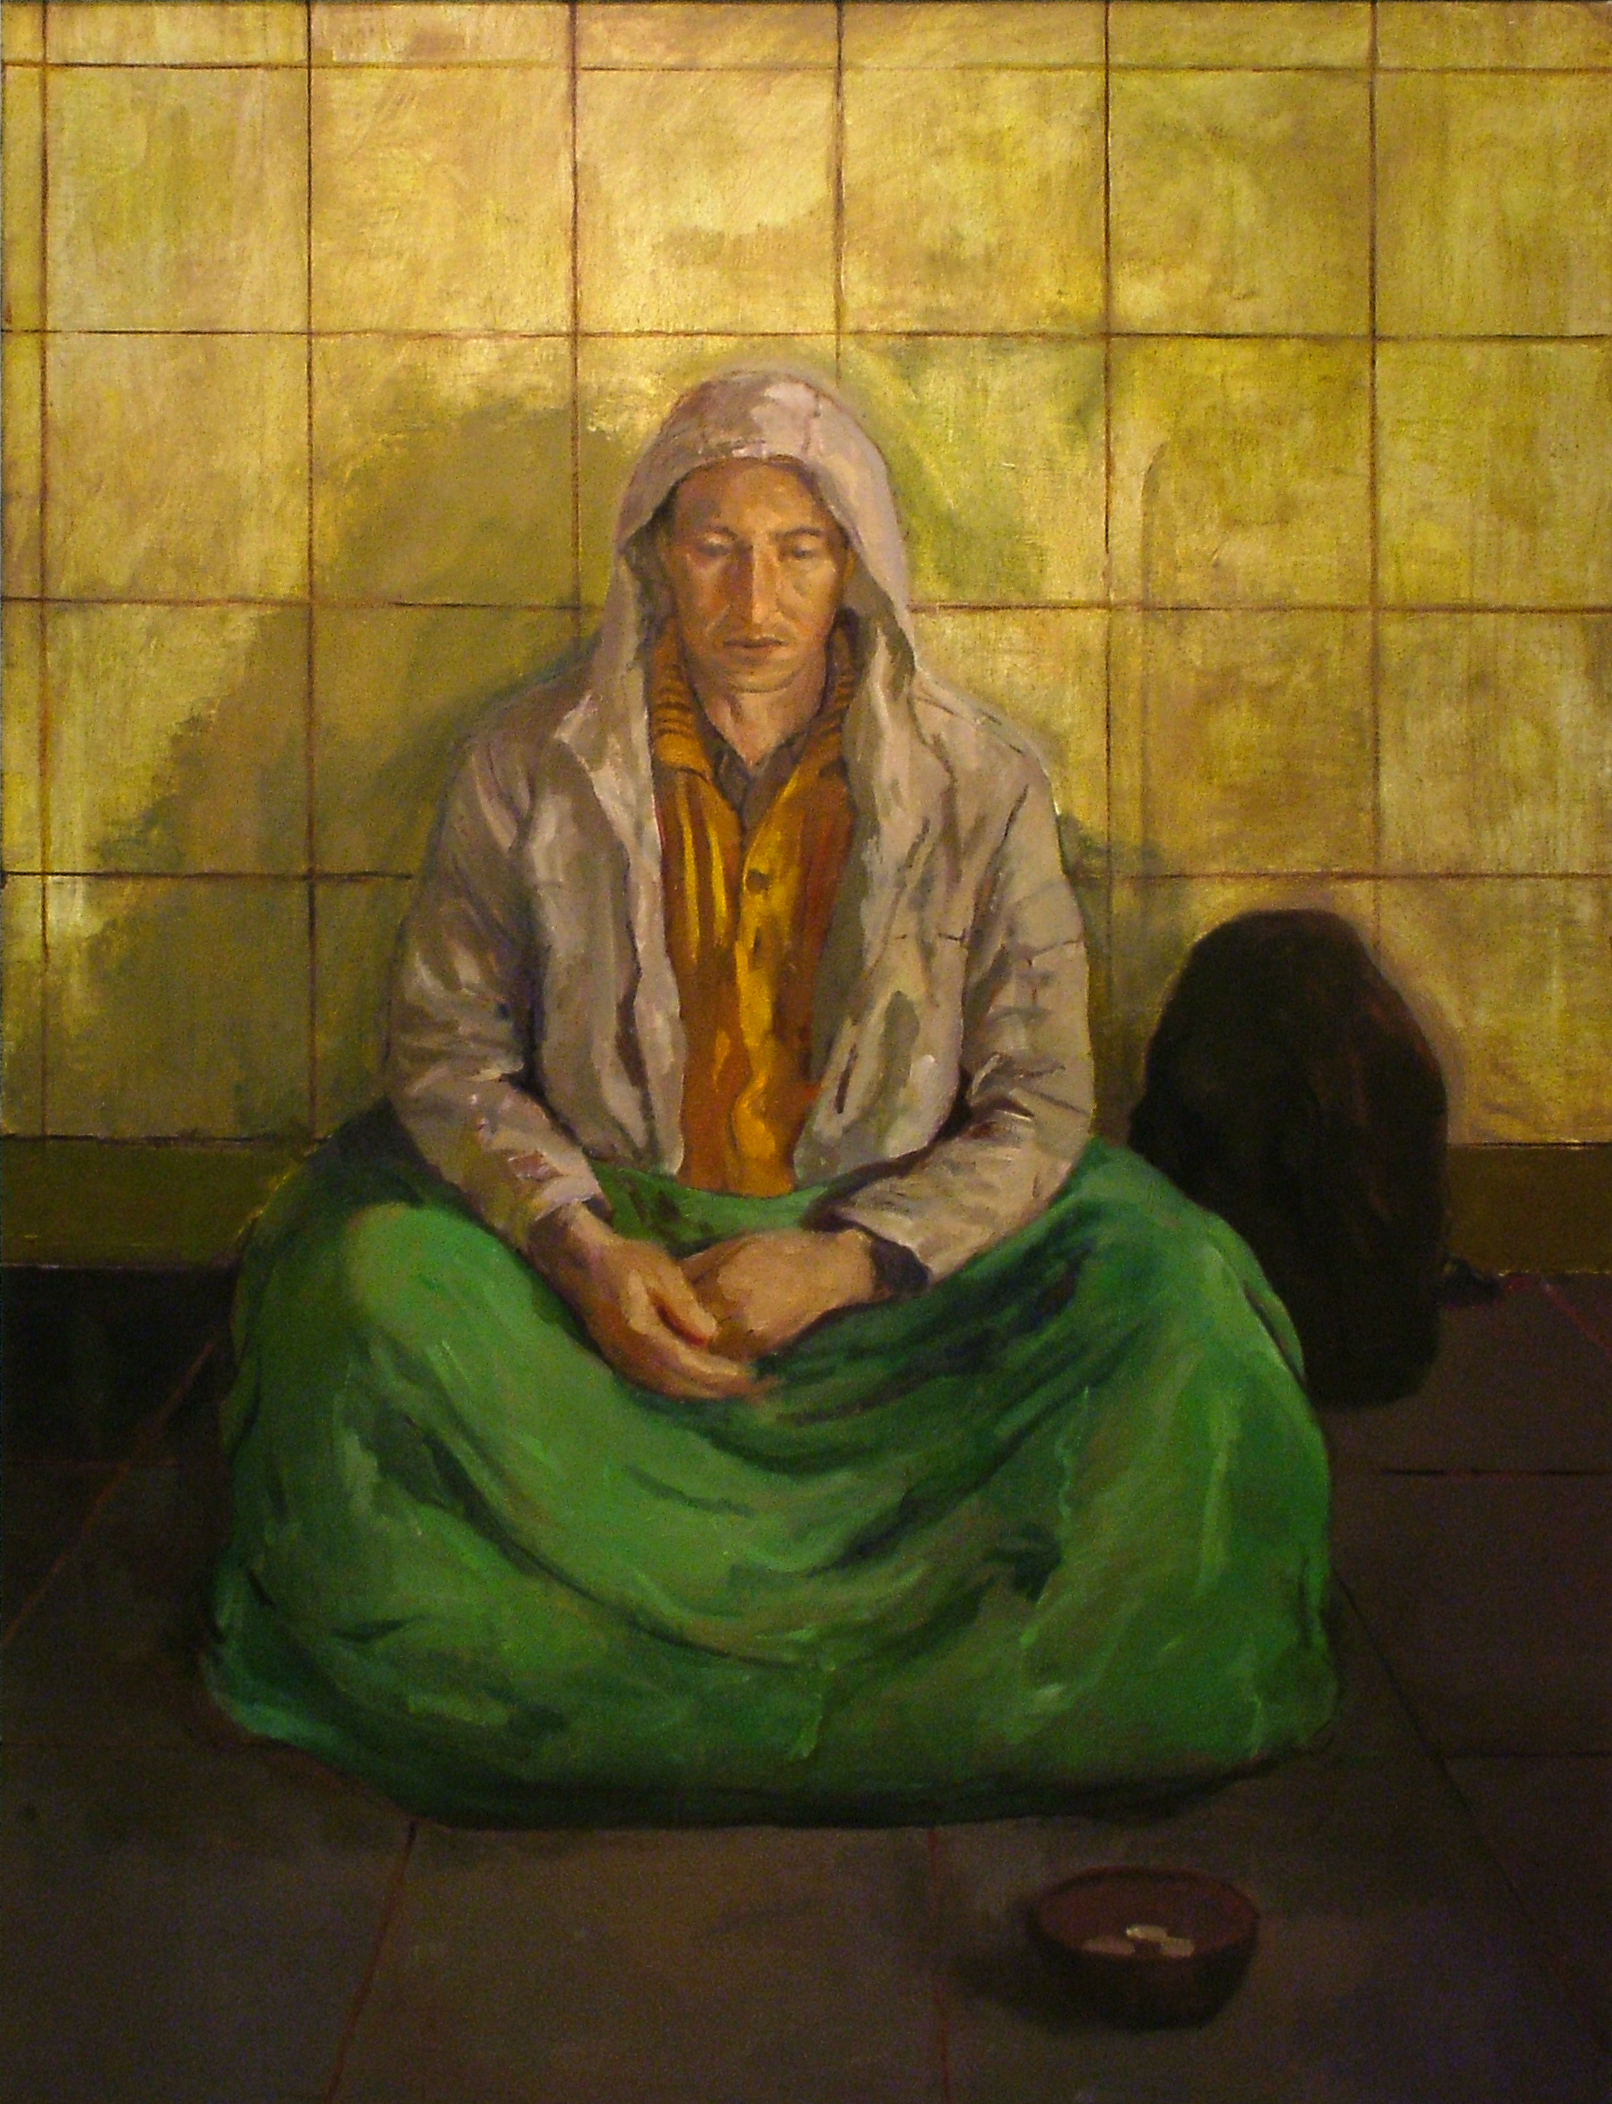    "Homeless"&nbsp;2007   Oil on canvas 